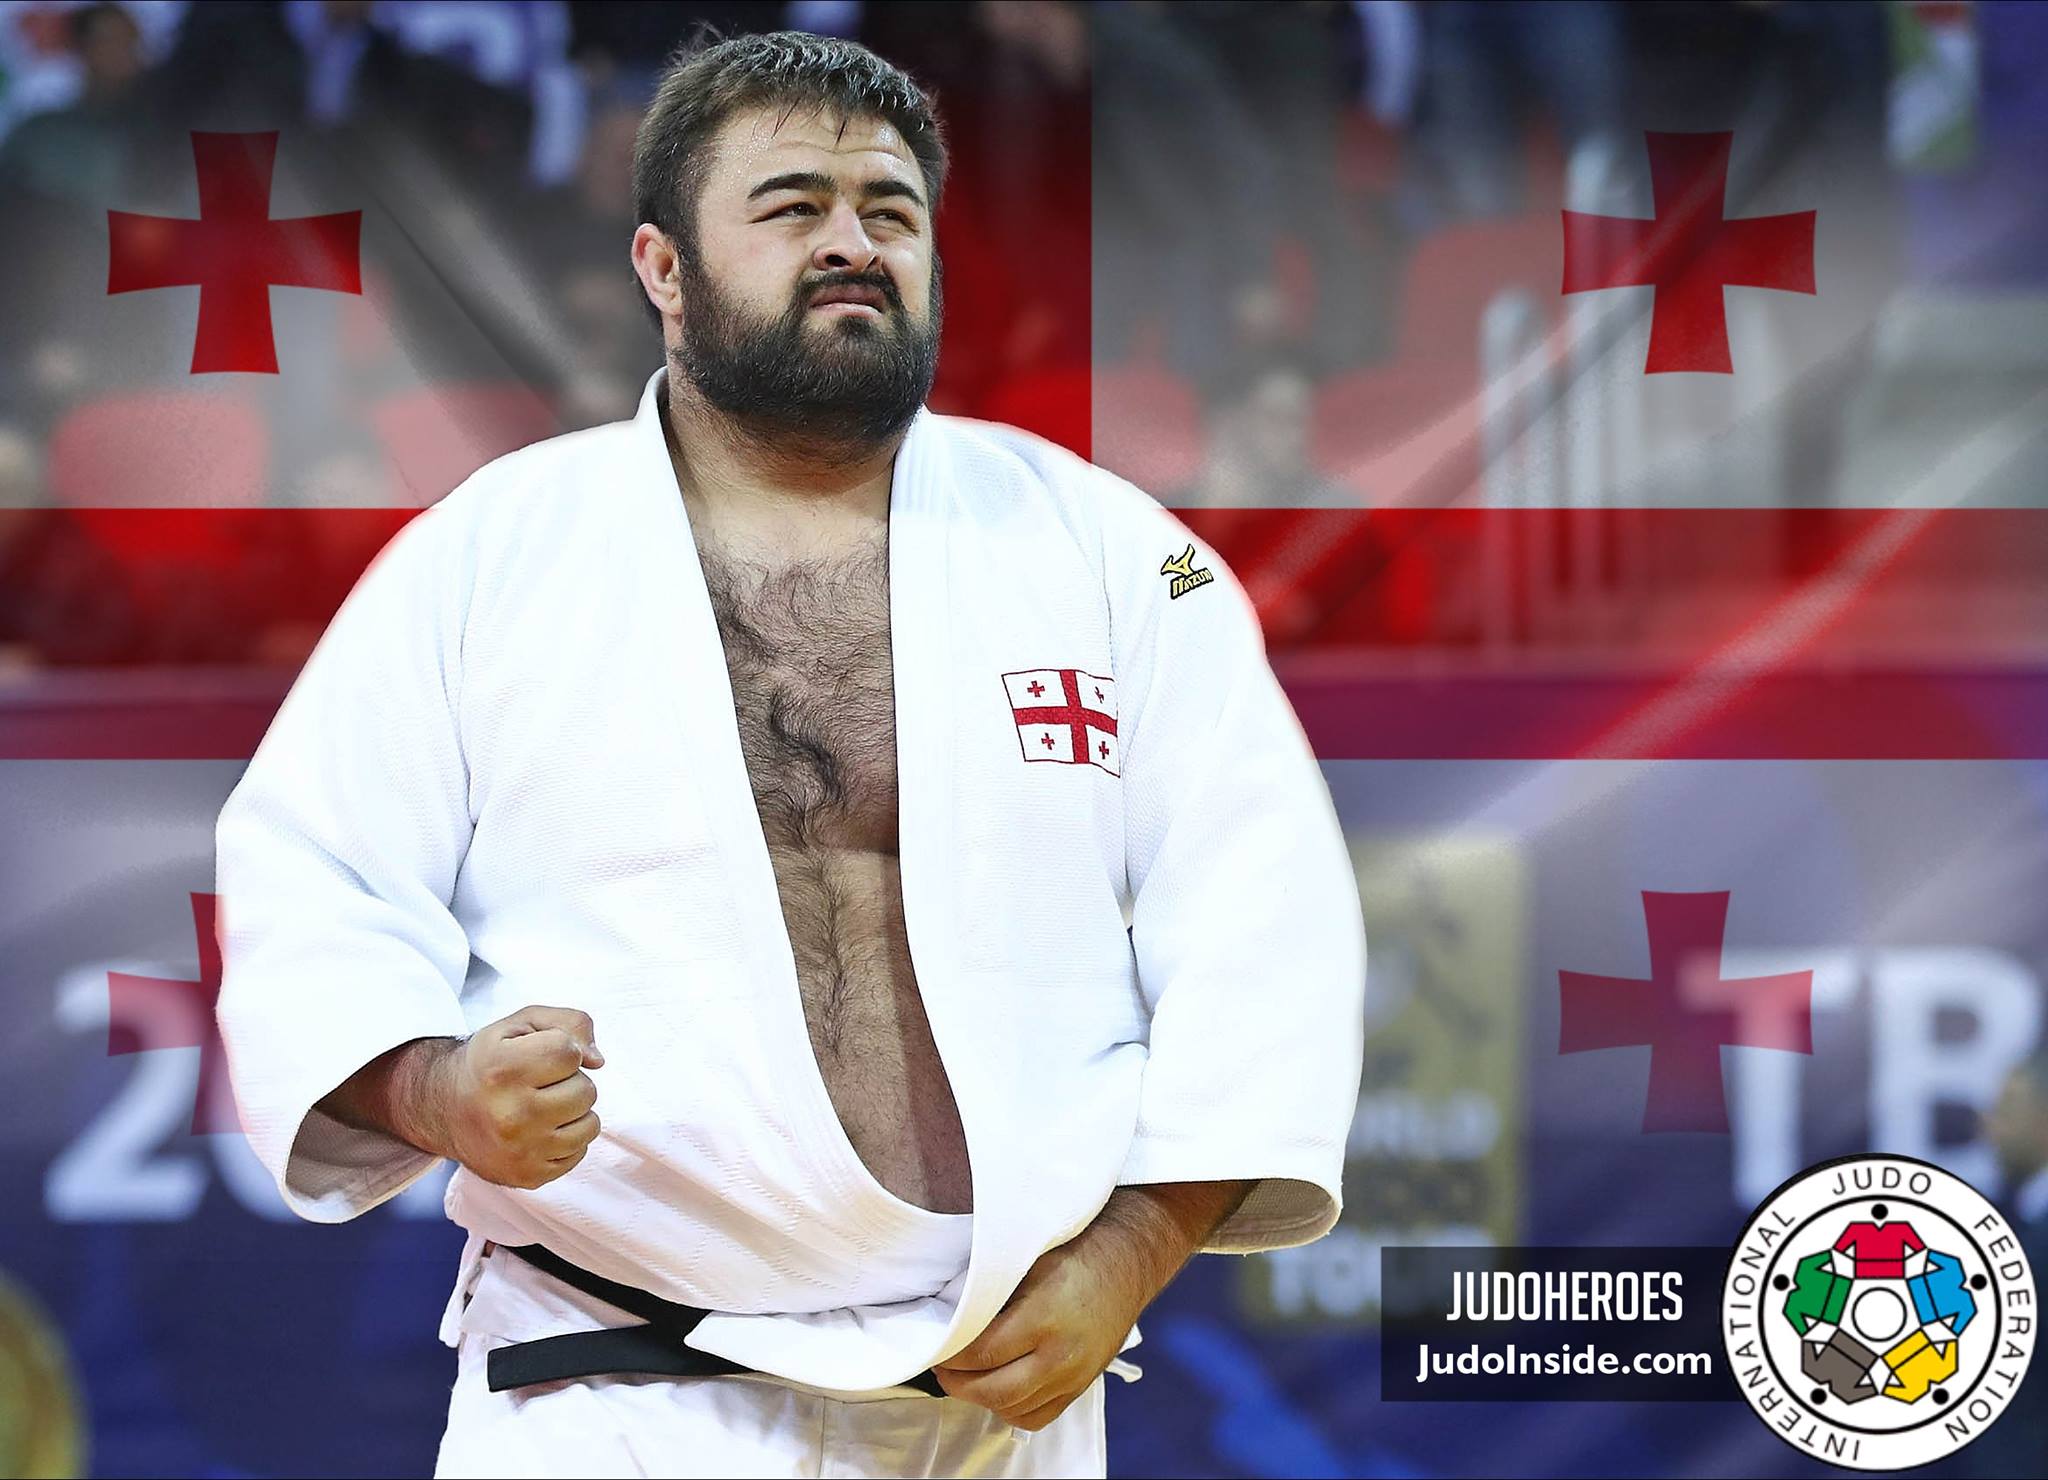 20170402_tbilisi_judoheroes_adam_okruashvili